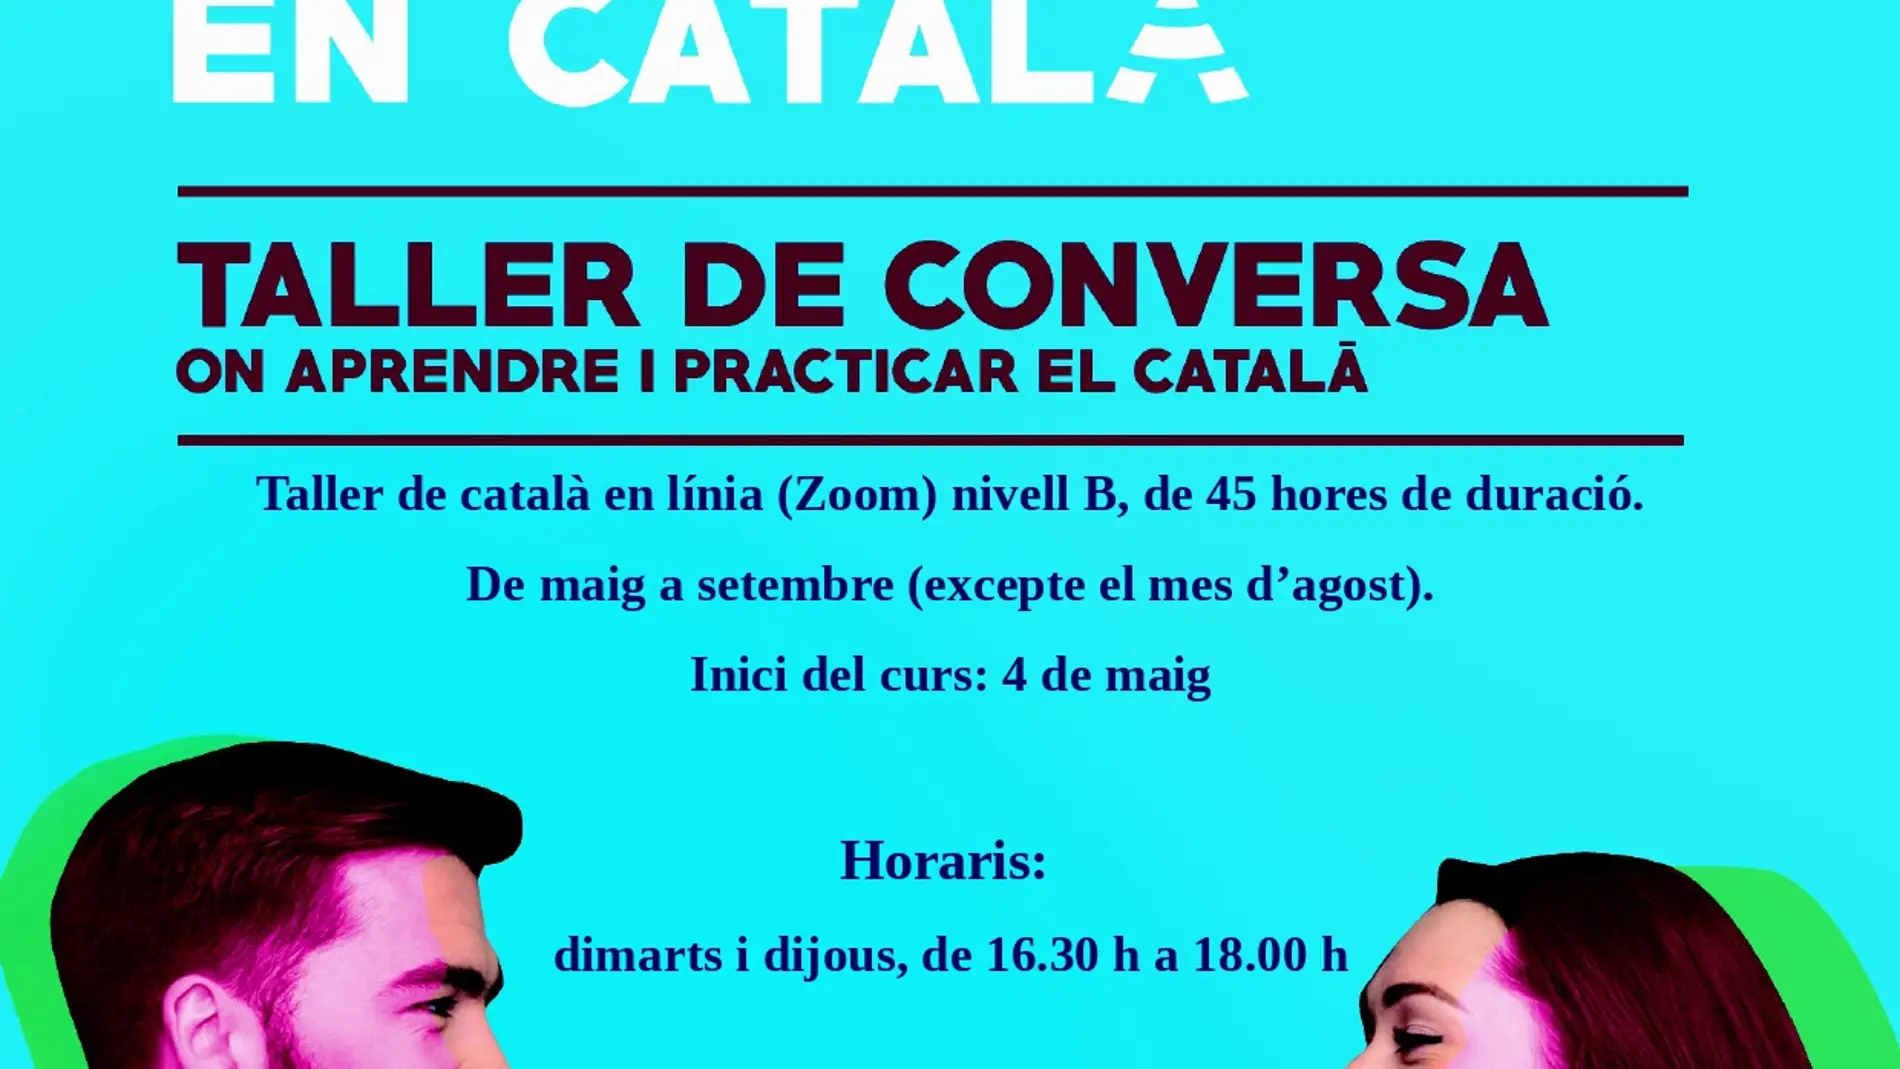 El Ayuntamiento de Ibiza ofrece un taller de conversación gratuito de catalán nivel B en línea. 